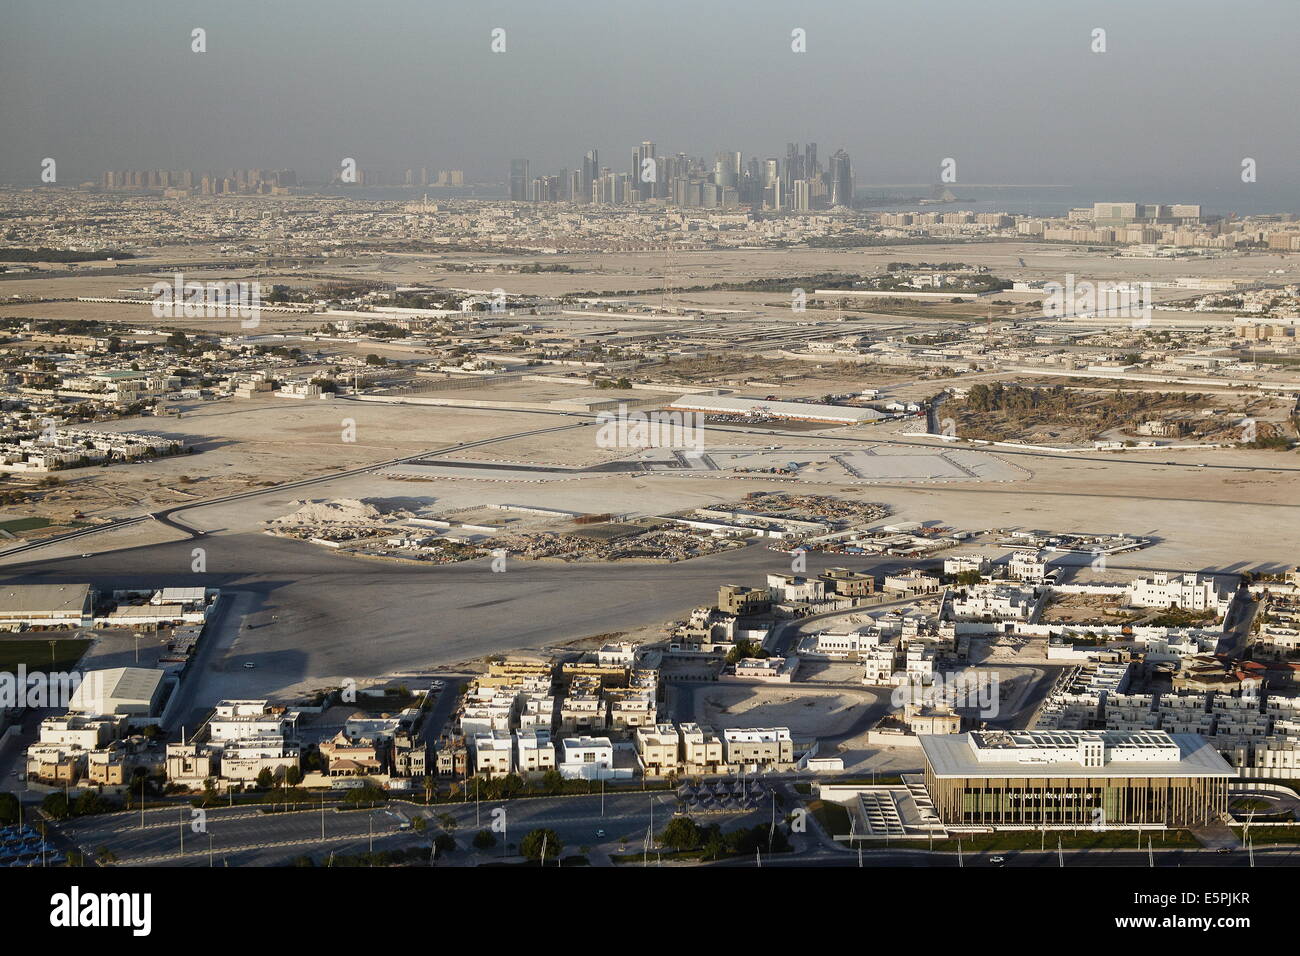 Vue aérienne de l'Aspire Tower plate-forme d'observation du centre-ville de Doha avec ses gratte-ciel dans la distance, Doha, Qatar Banque D'Images